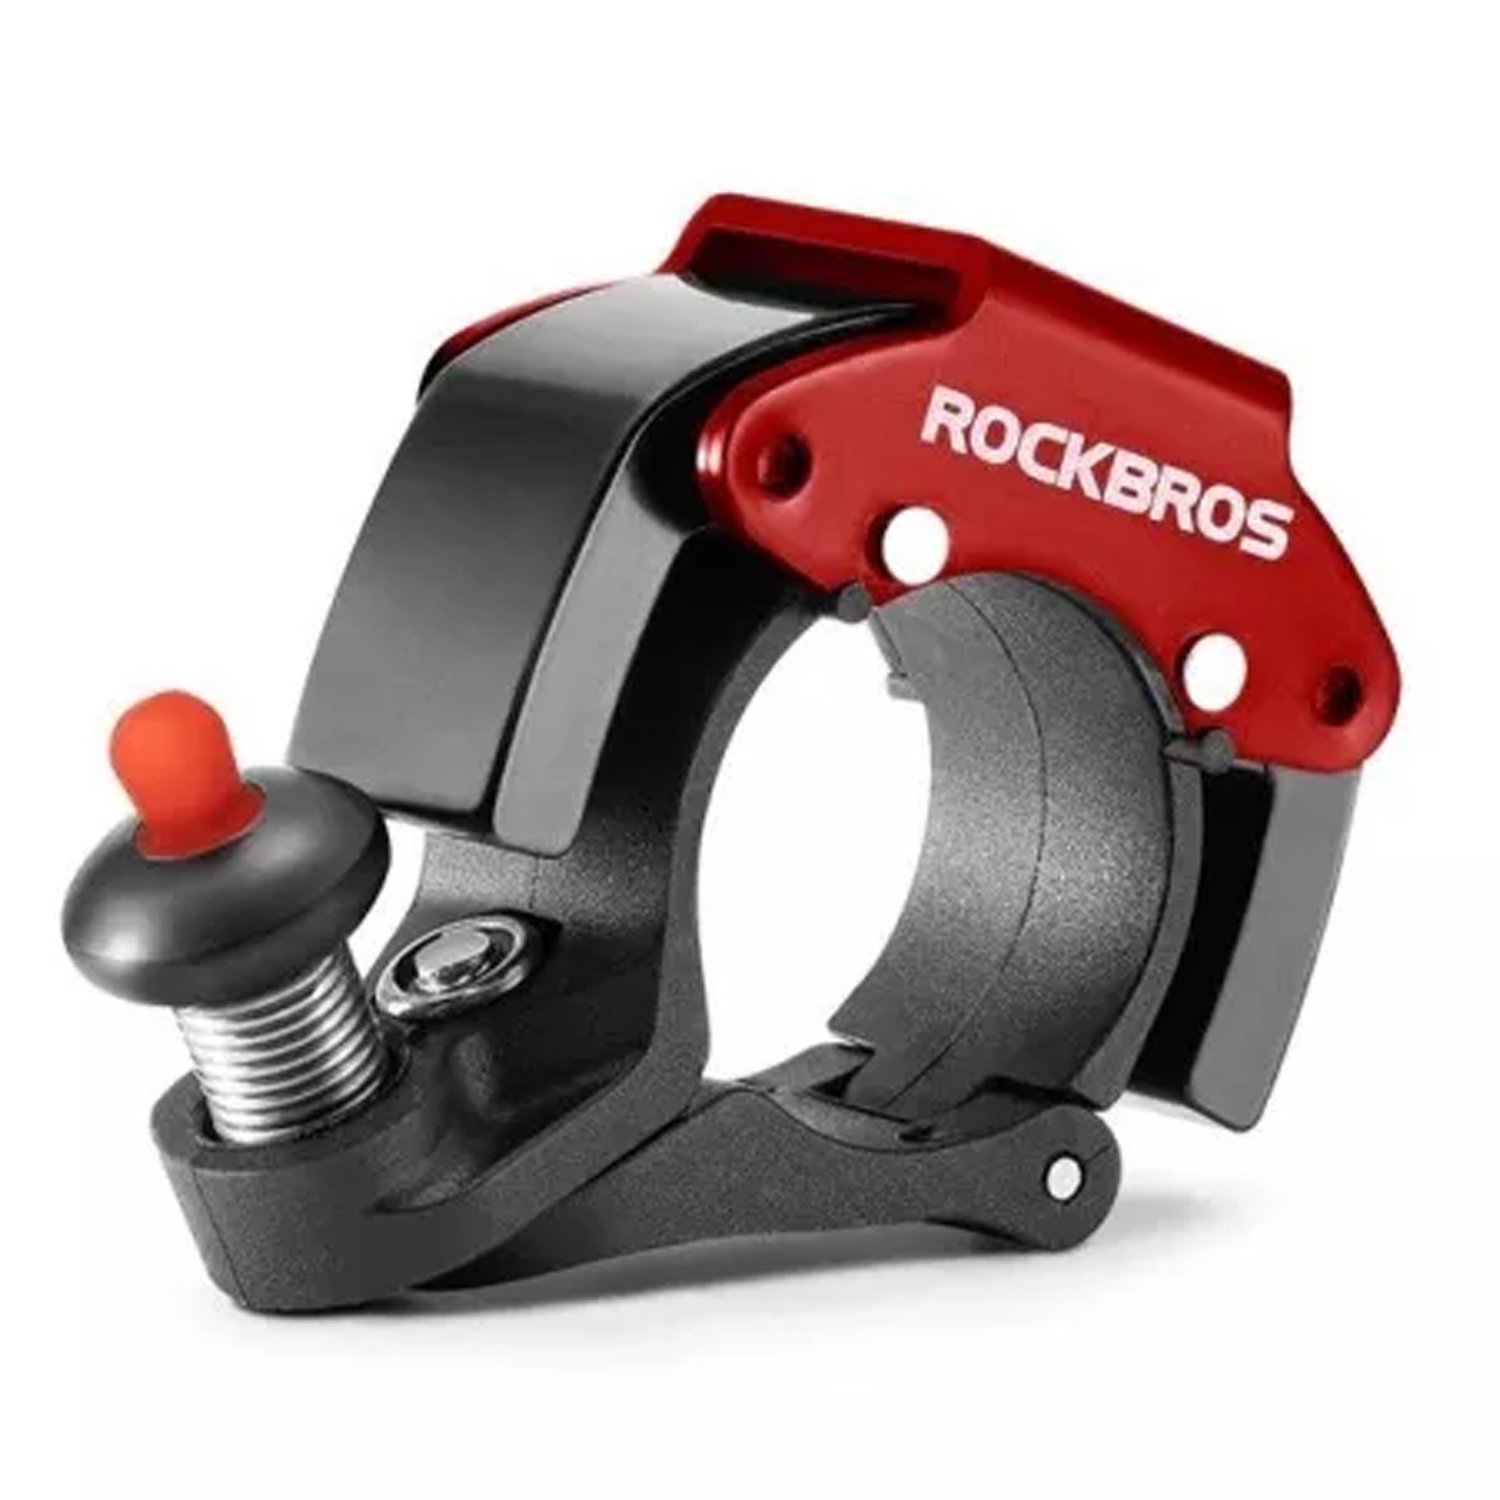 Звонок велосипедный ROCKBROS, D22.2 мм, черный с красным, RB_34210009001 звонок велосипедный rockbros d22 2 мм rb 34210003001